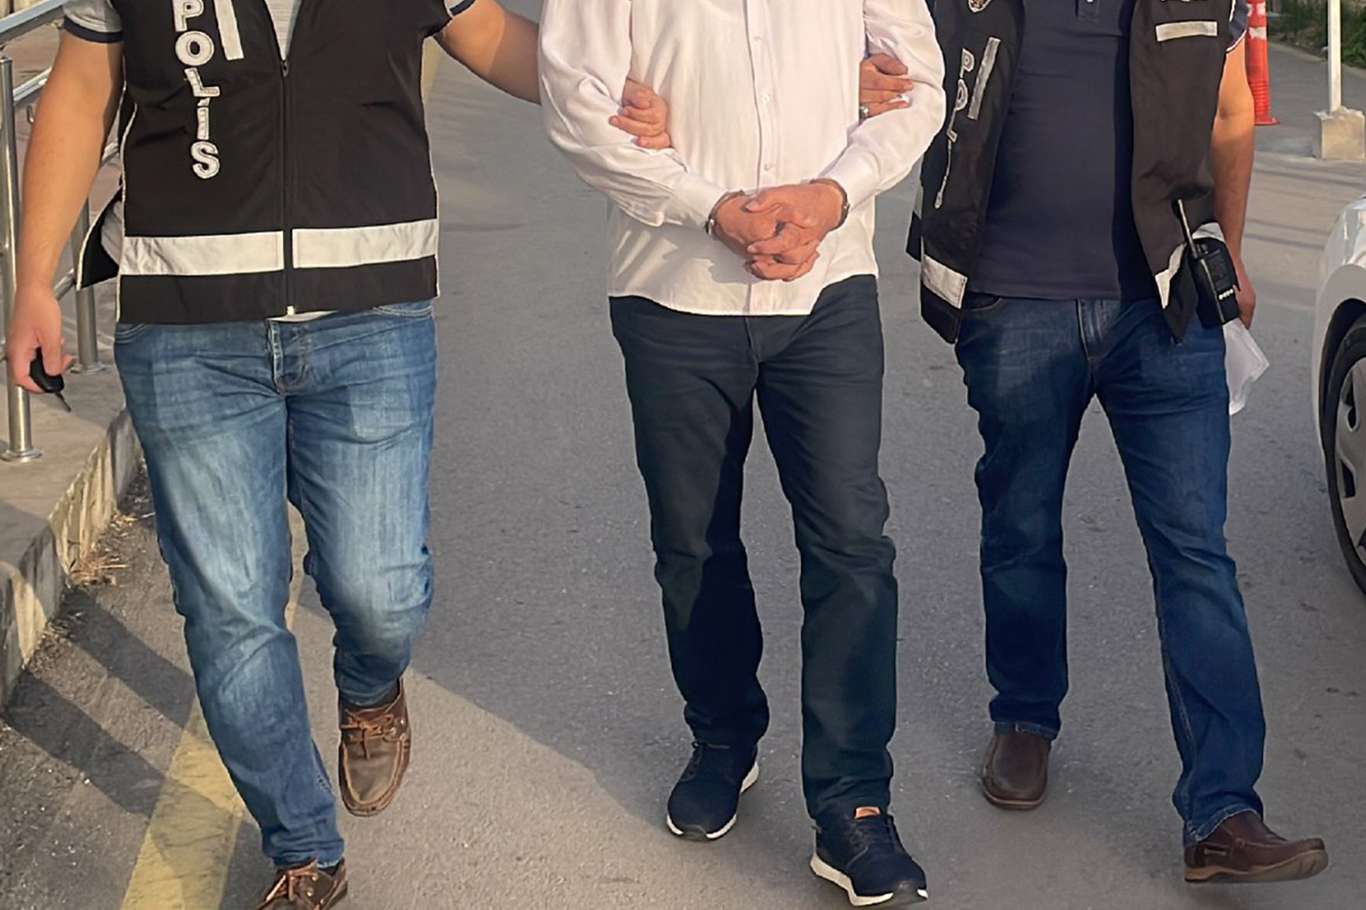 Gaziantep'te hırsızlık yapan 2 şüpheli tutuklandı